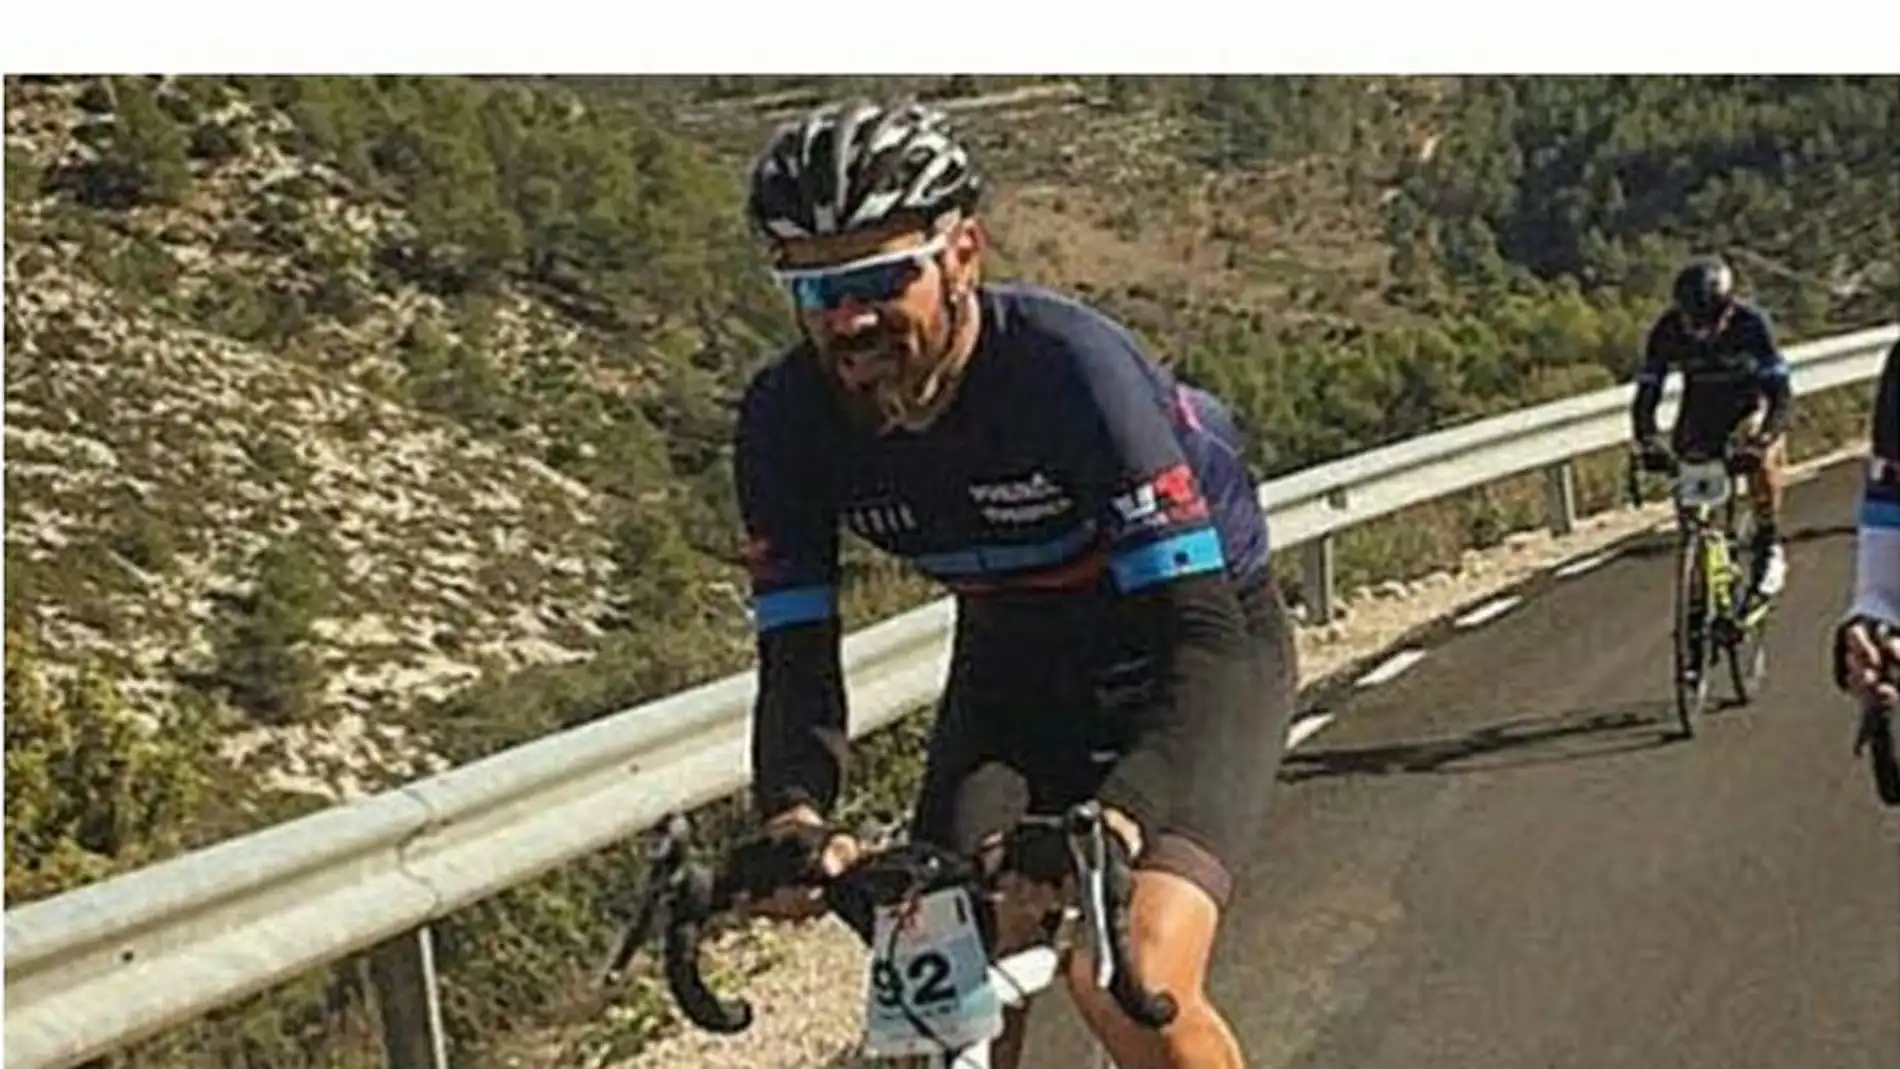 Fotografía del ciclista arrollado que están difundiendo sus amigos.